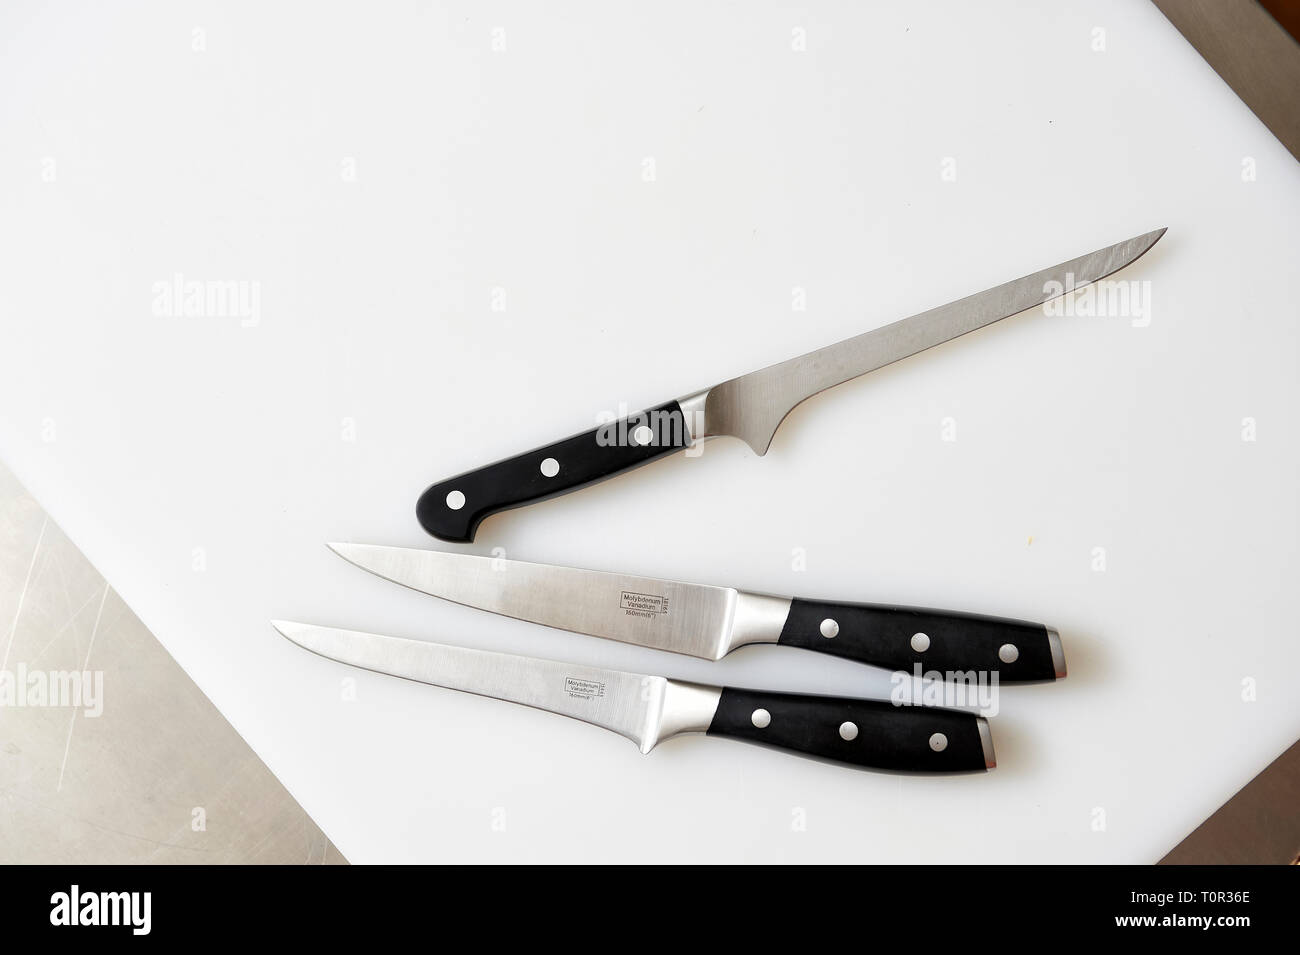 Auf einem weissen Kuechenbrett liegen 3 unterschiedliche Messer fuer die verschiedenen Verarbeitungsschritte in der Kueche. Foto de stock